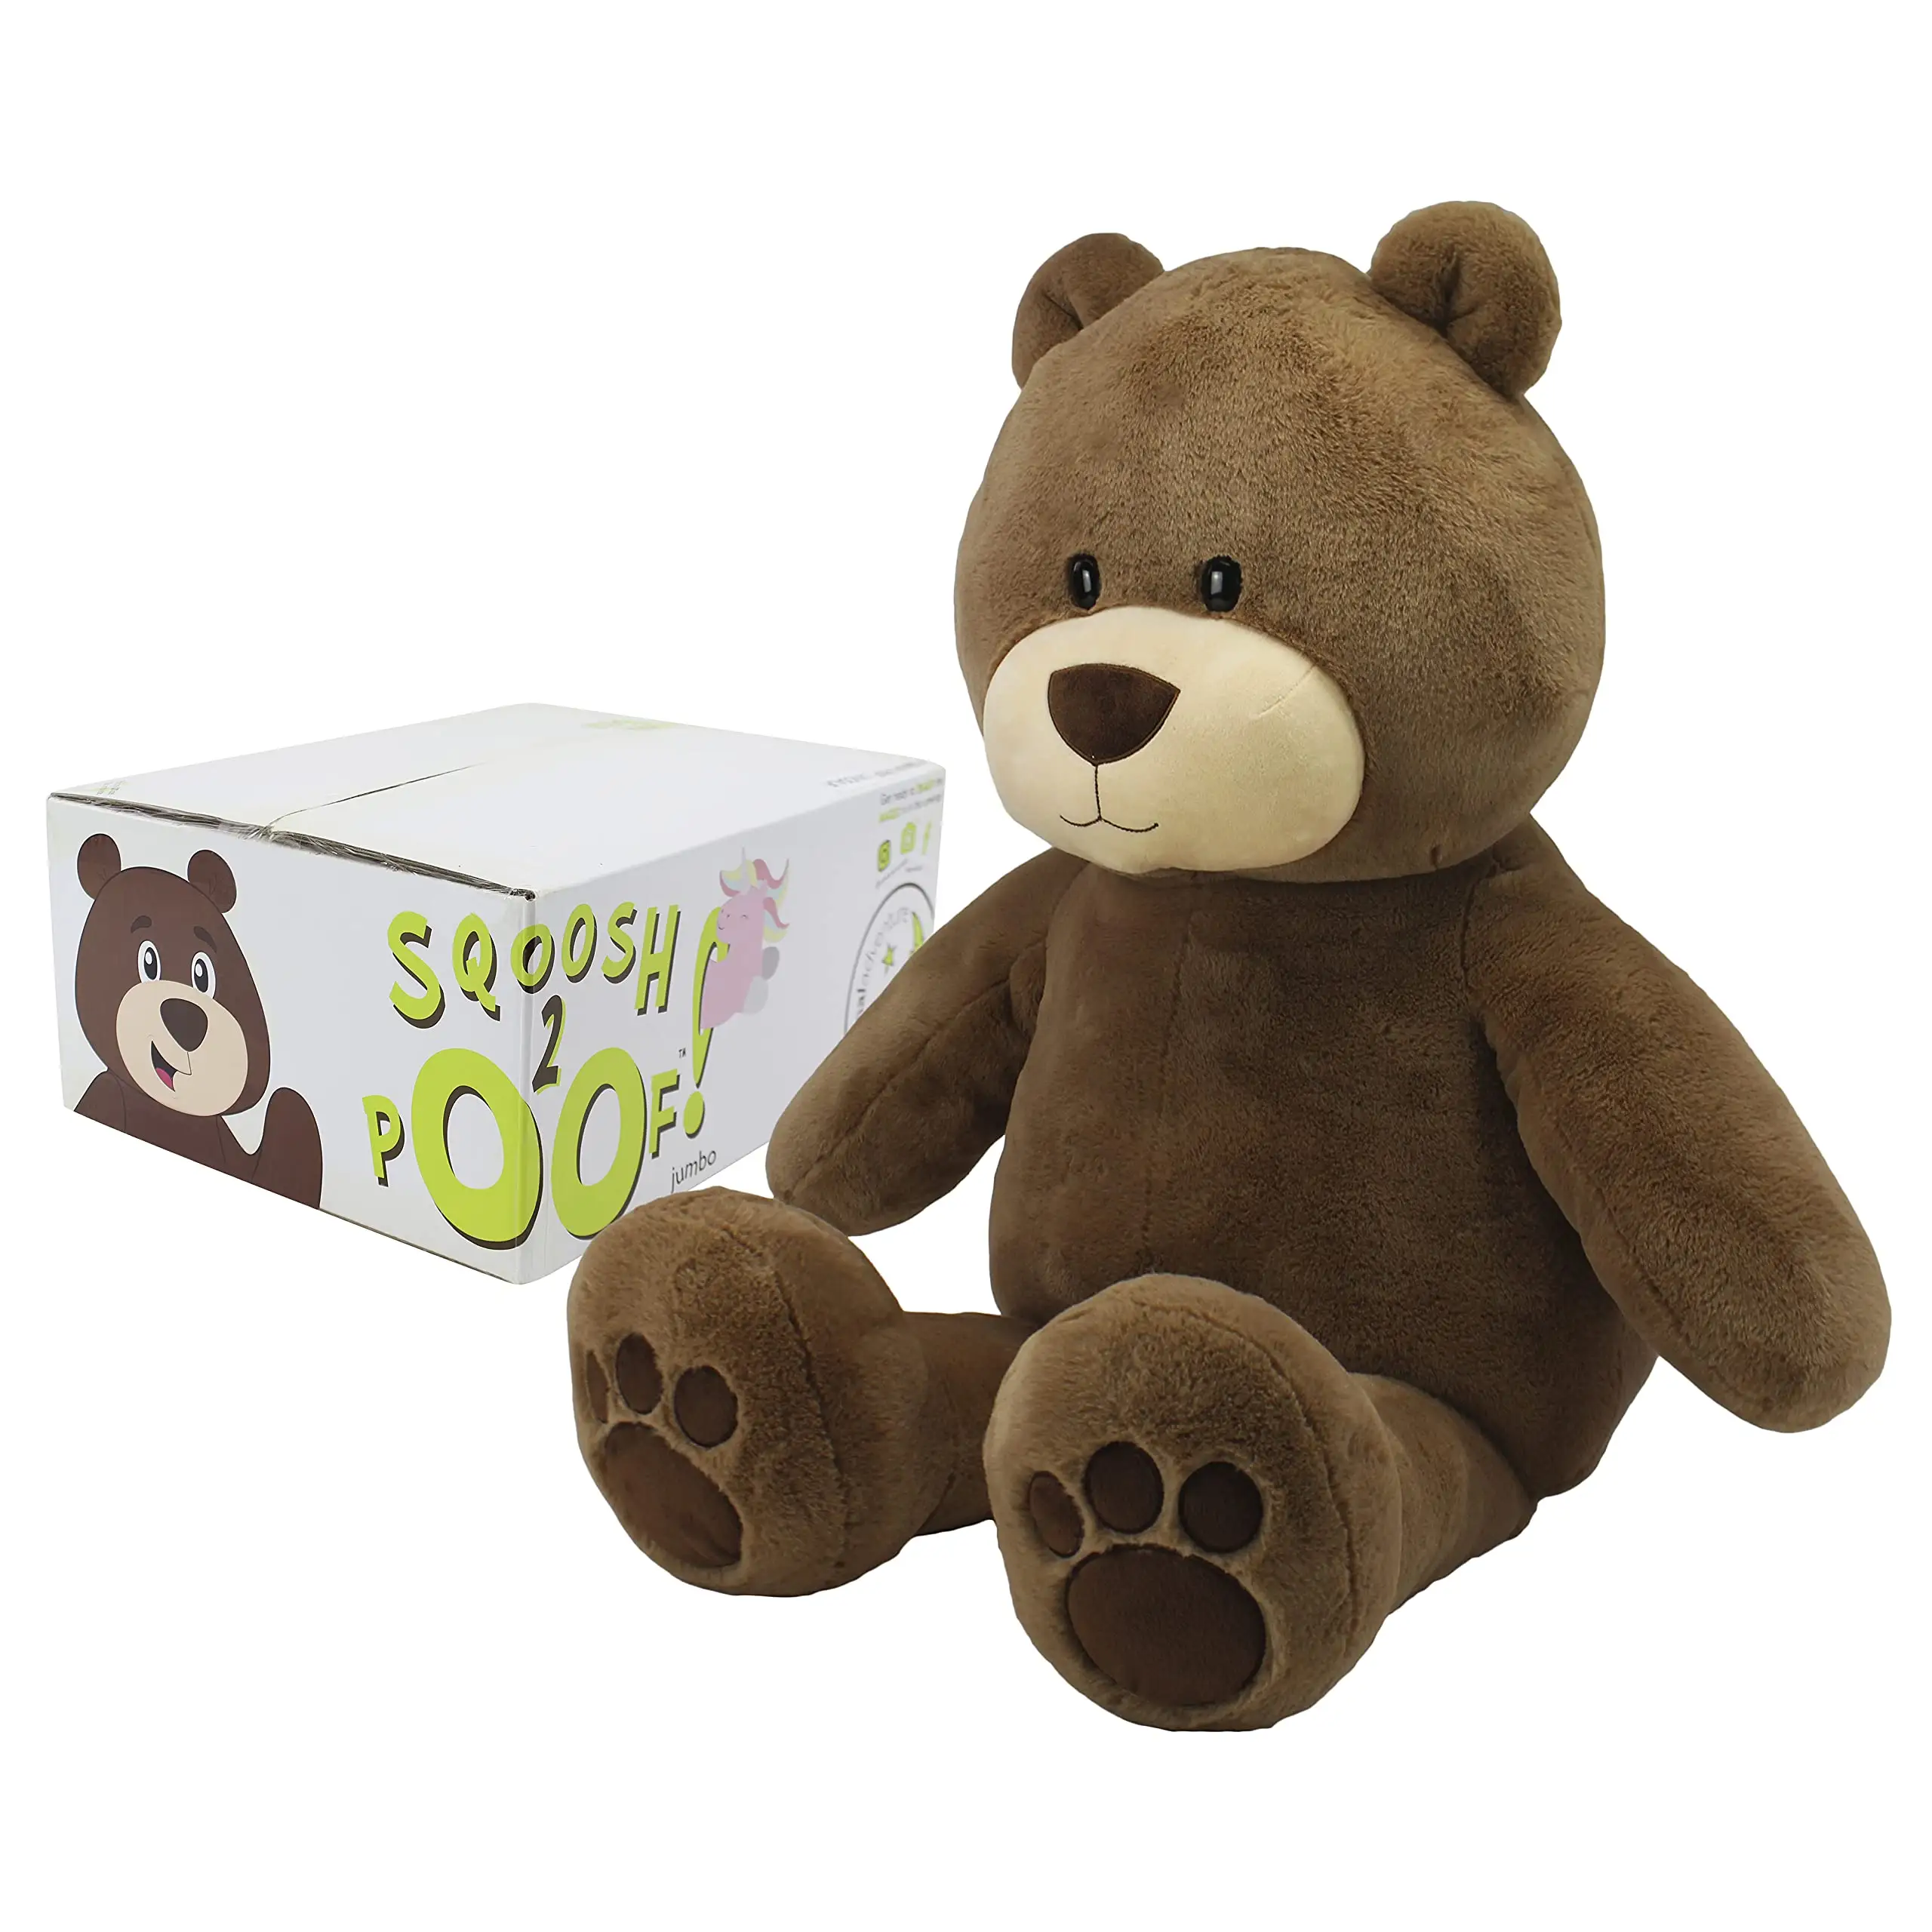 Urso de pelúcia personalizado da fábrica, gigante, fofo, ultra macio, pelúcia, urso de pelúcia com bônus interativo surpresa